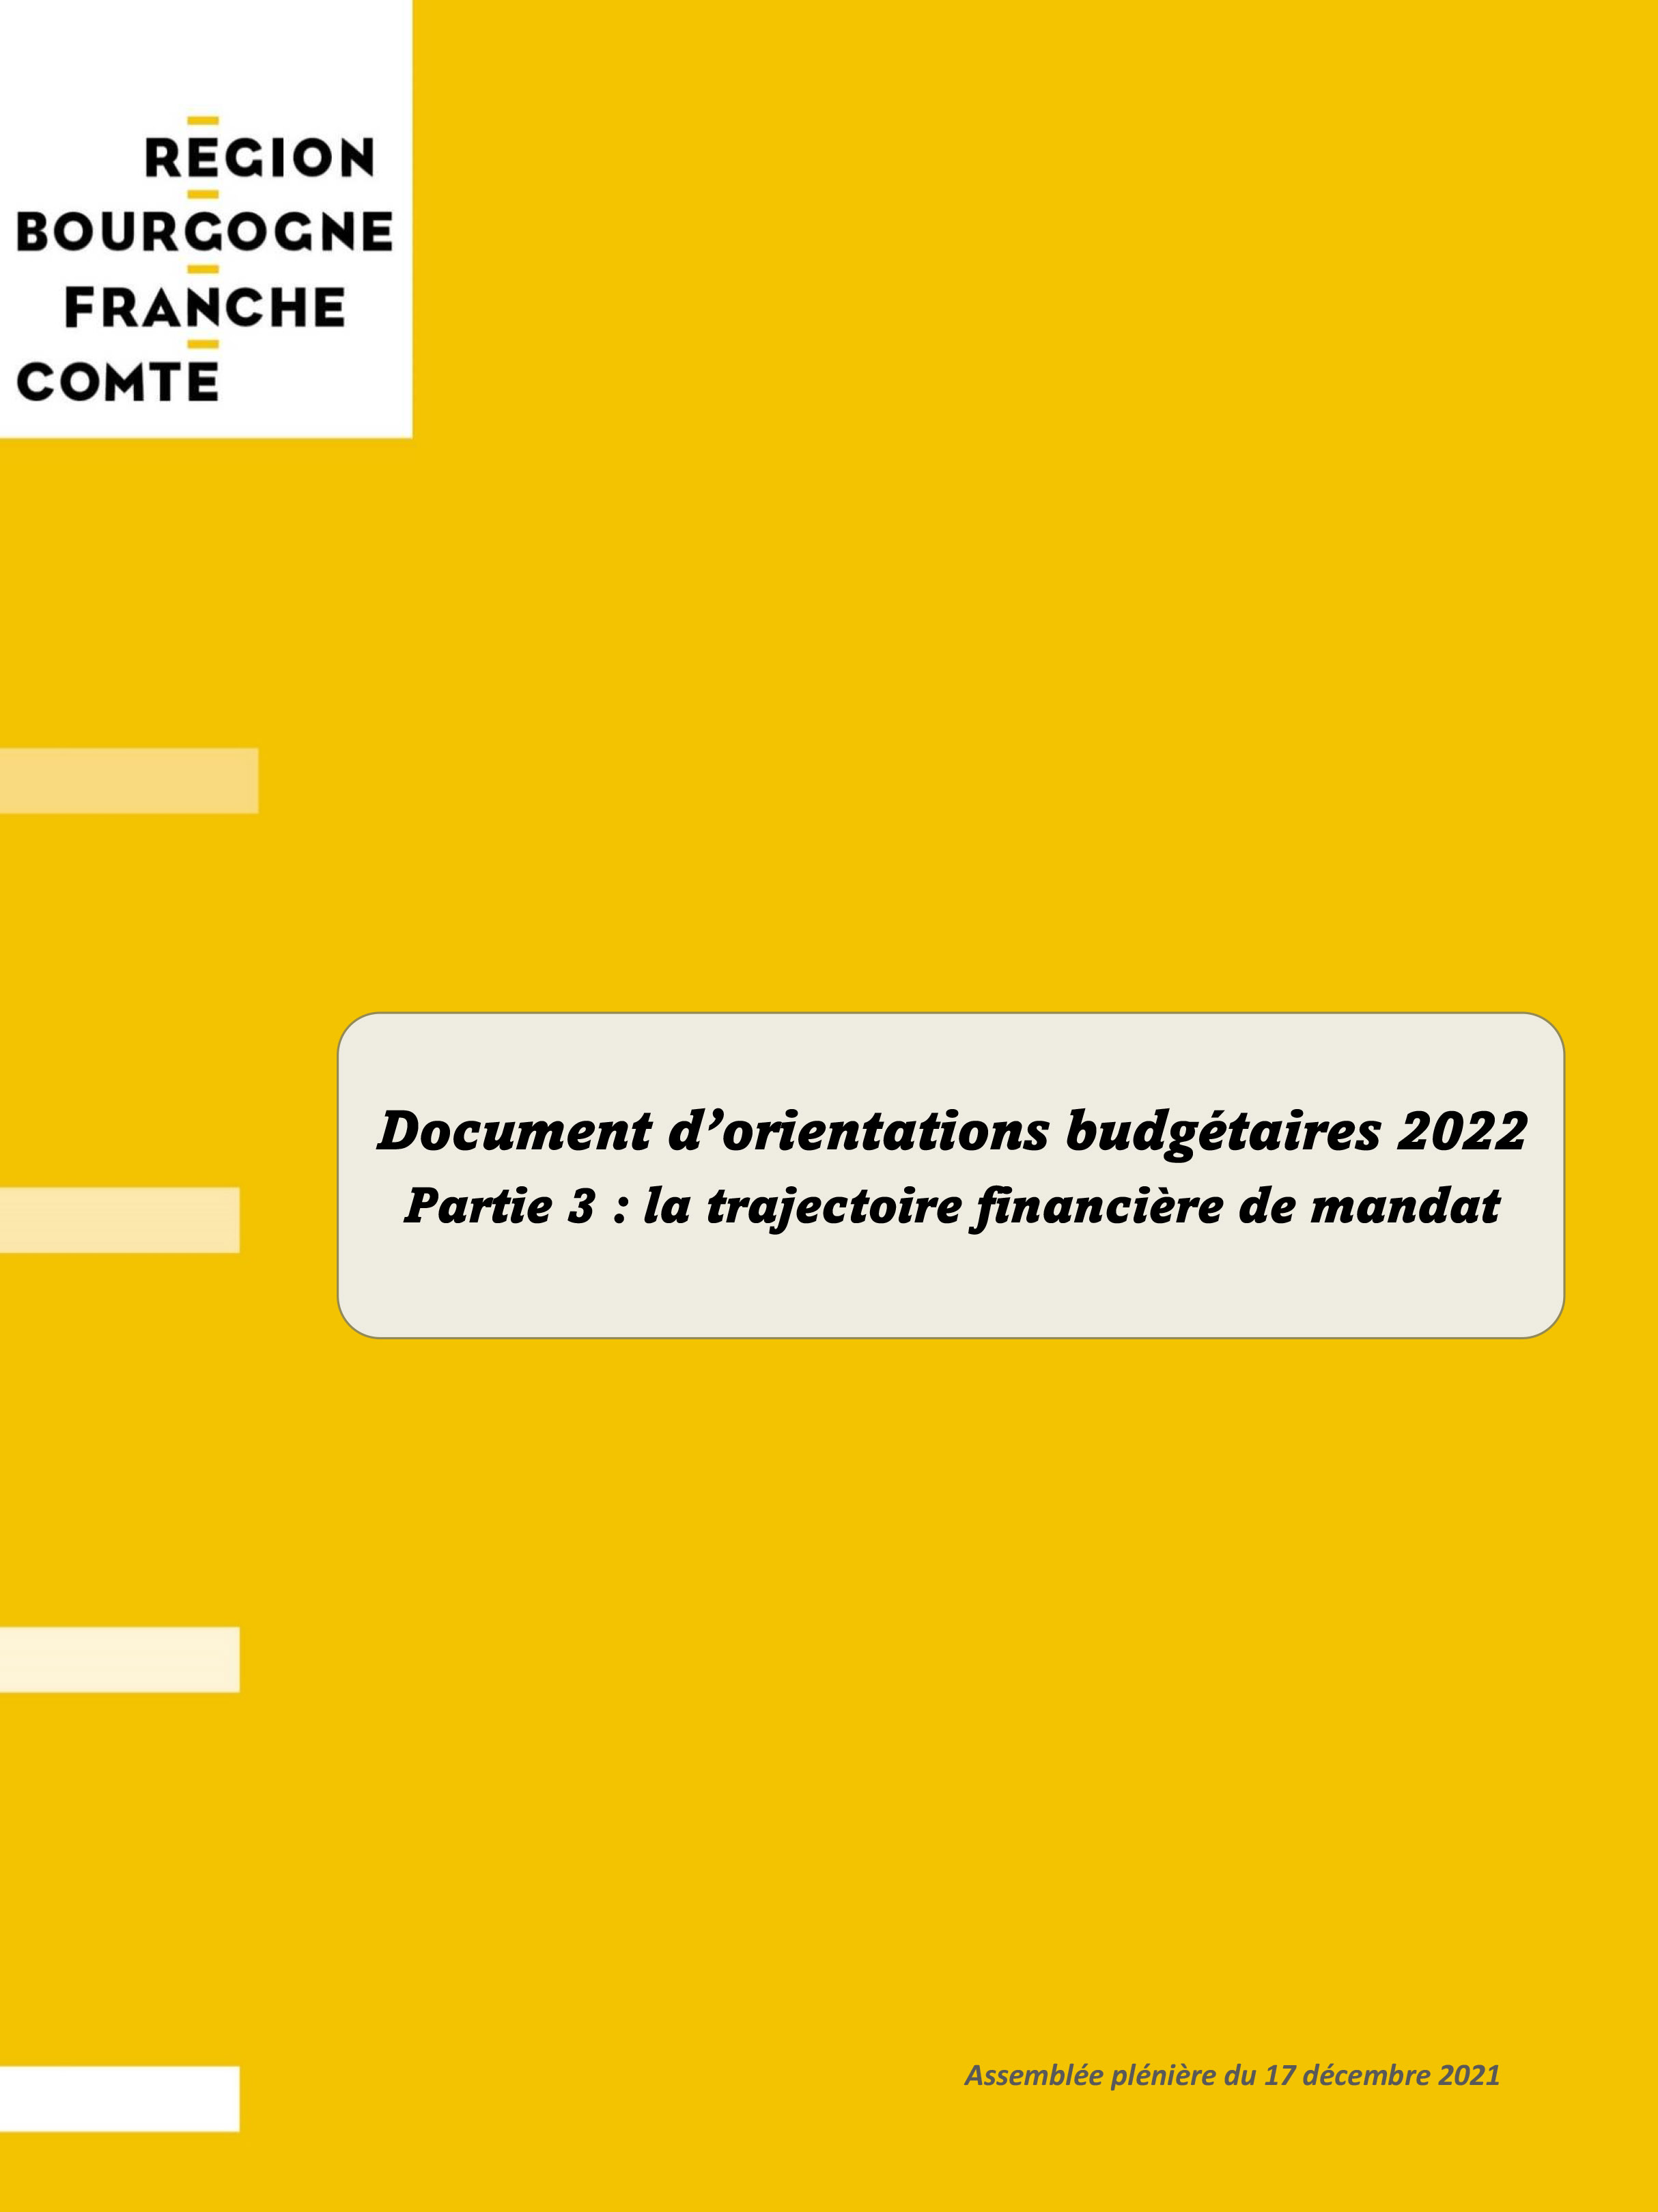 Projet de mandat - Document d’orientations budgétaires 2022 - La trajectoire financière de mandat